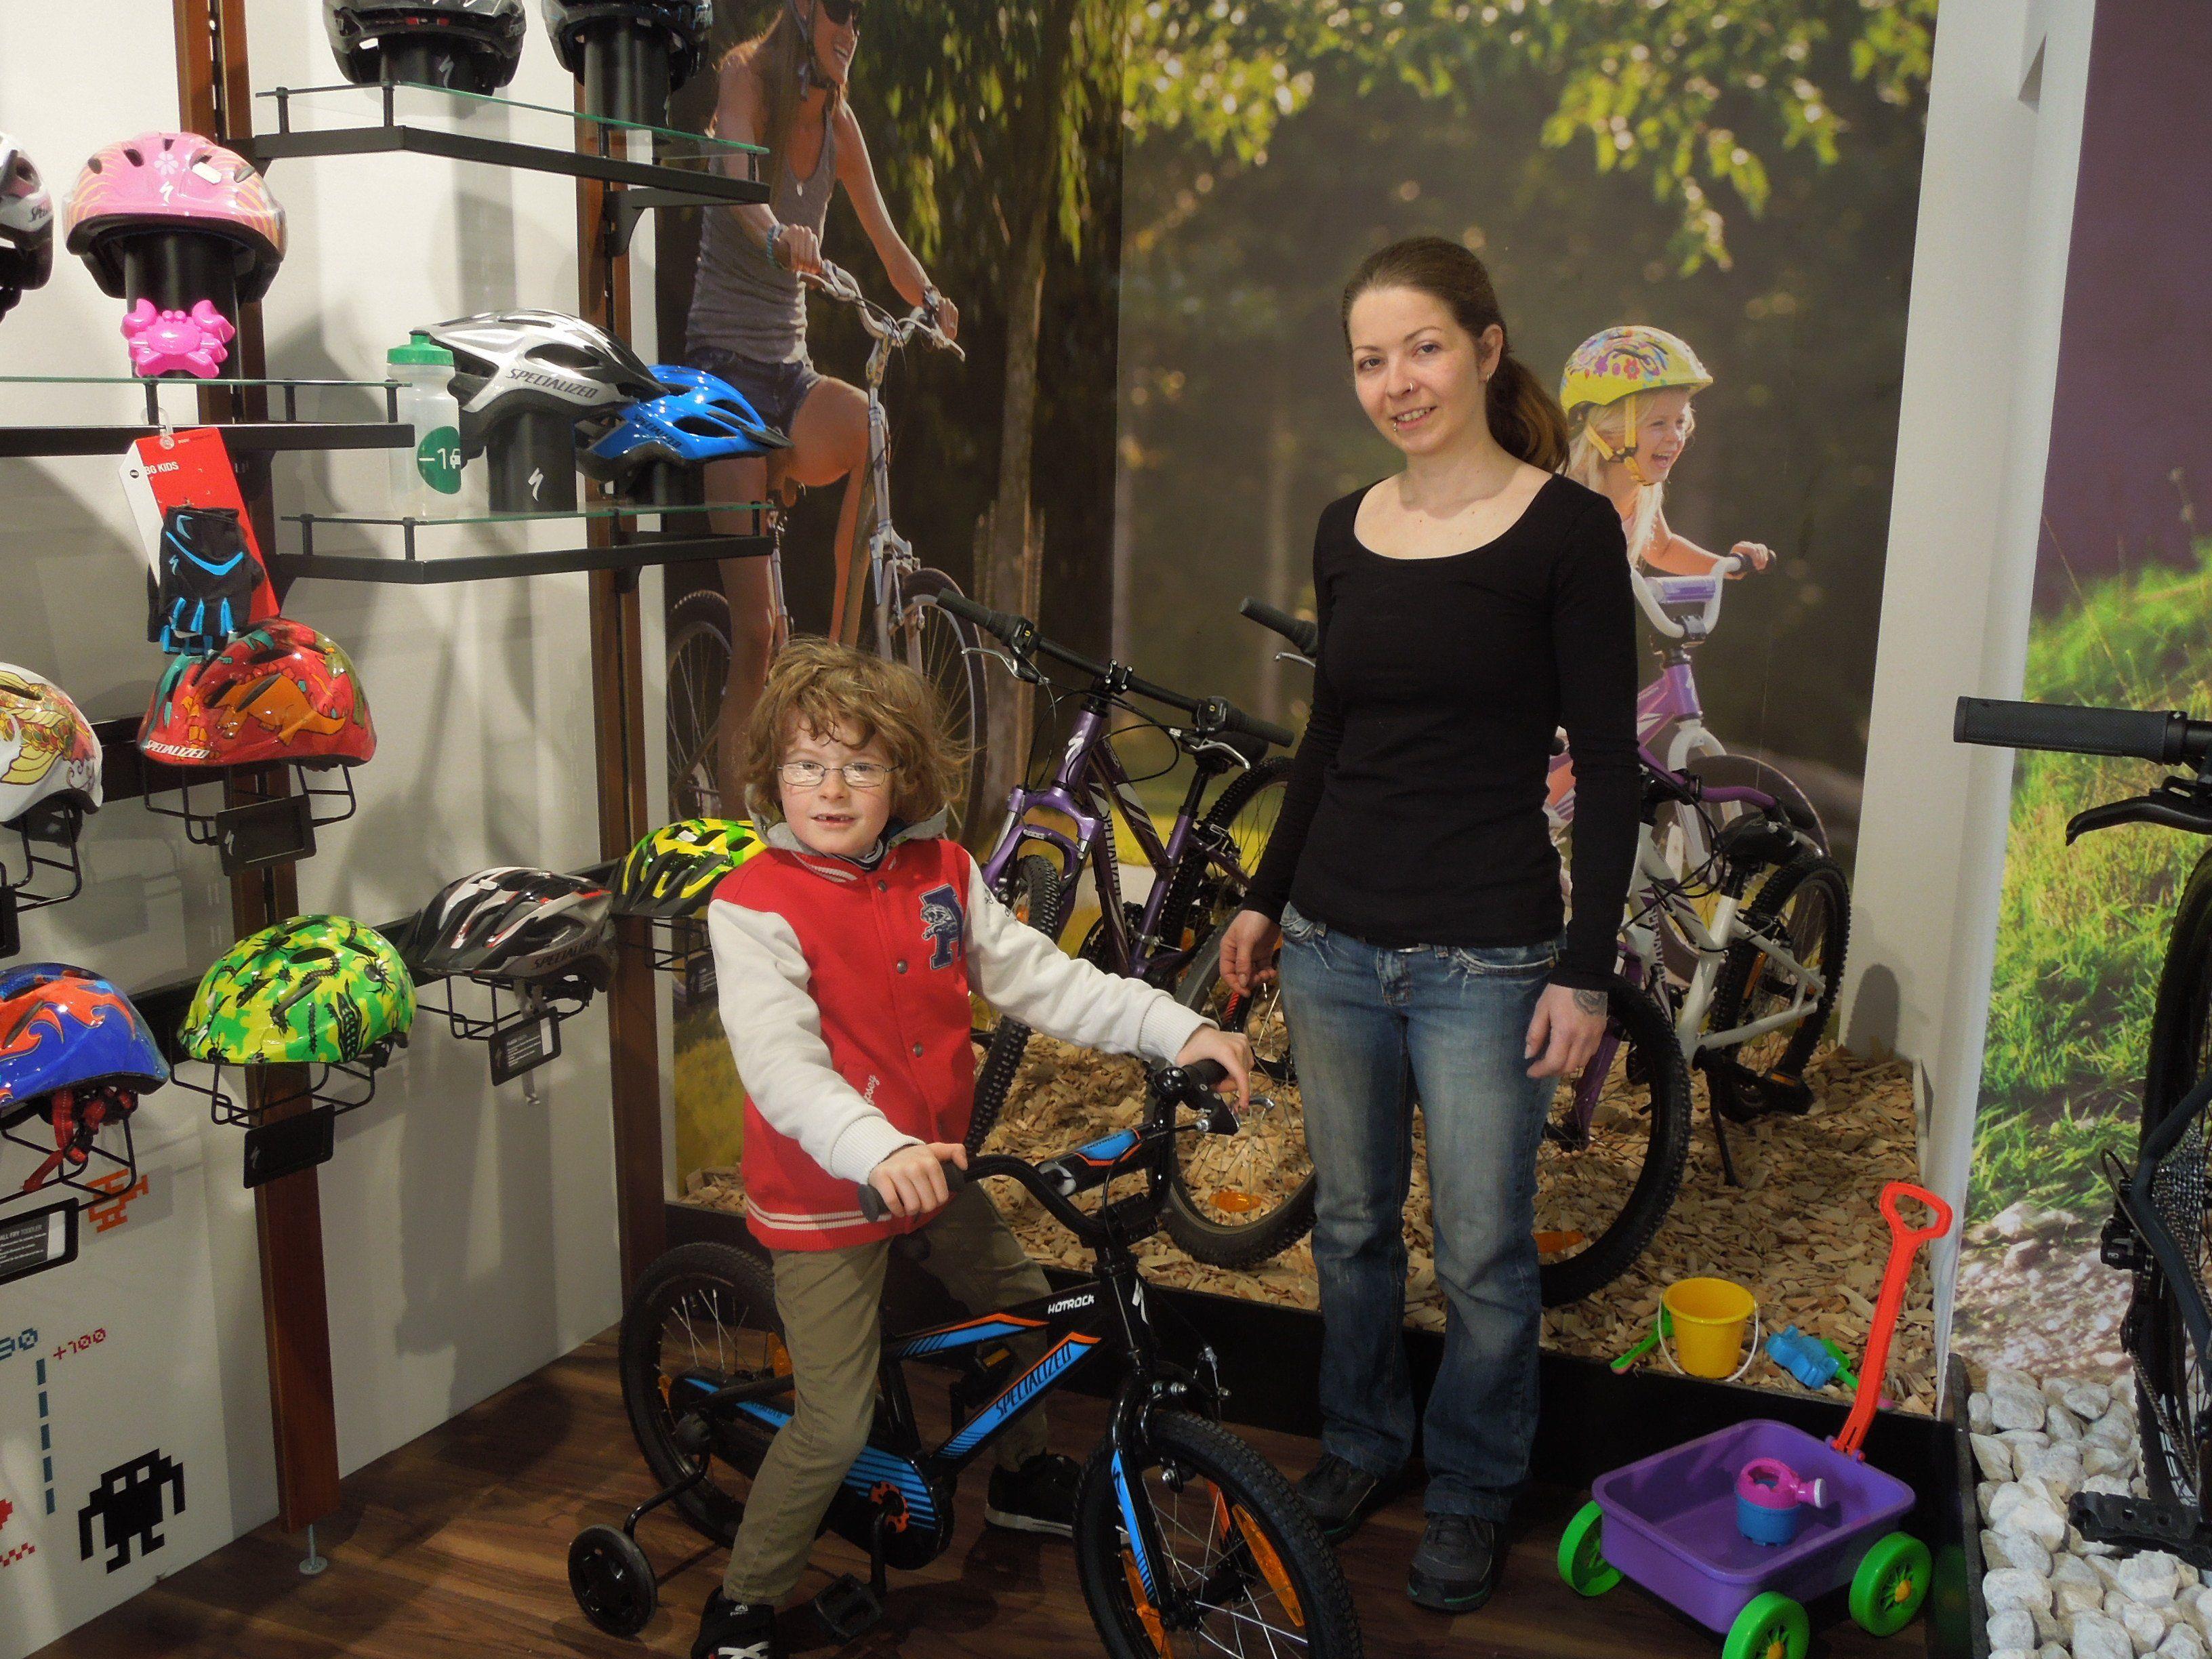 Zum neuen Geschäft gehört auch eine tolle Kinderecke, in dem die neuesten Fahrradtrends für den Nachwuchs angeboten werden.